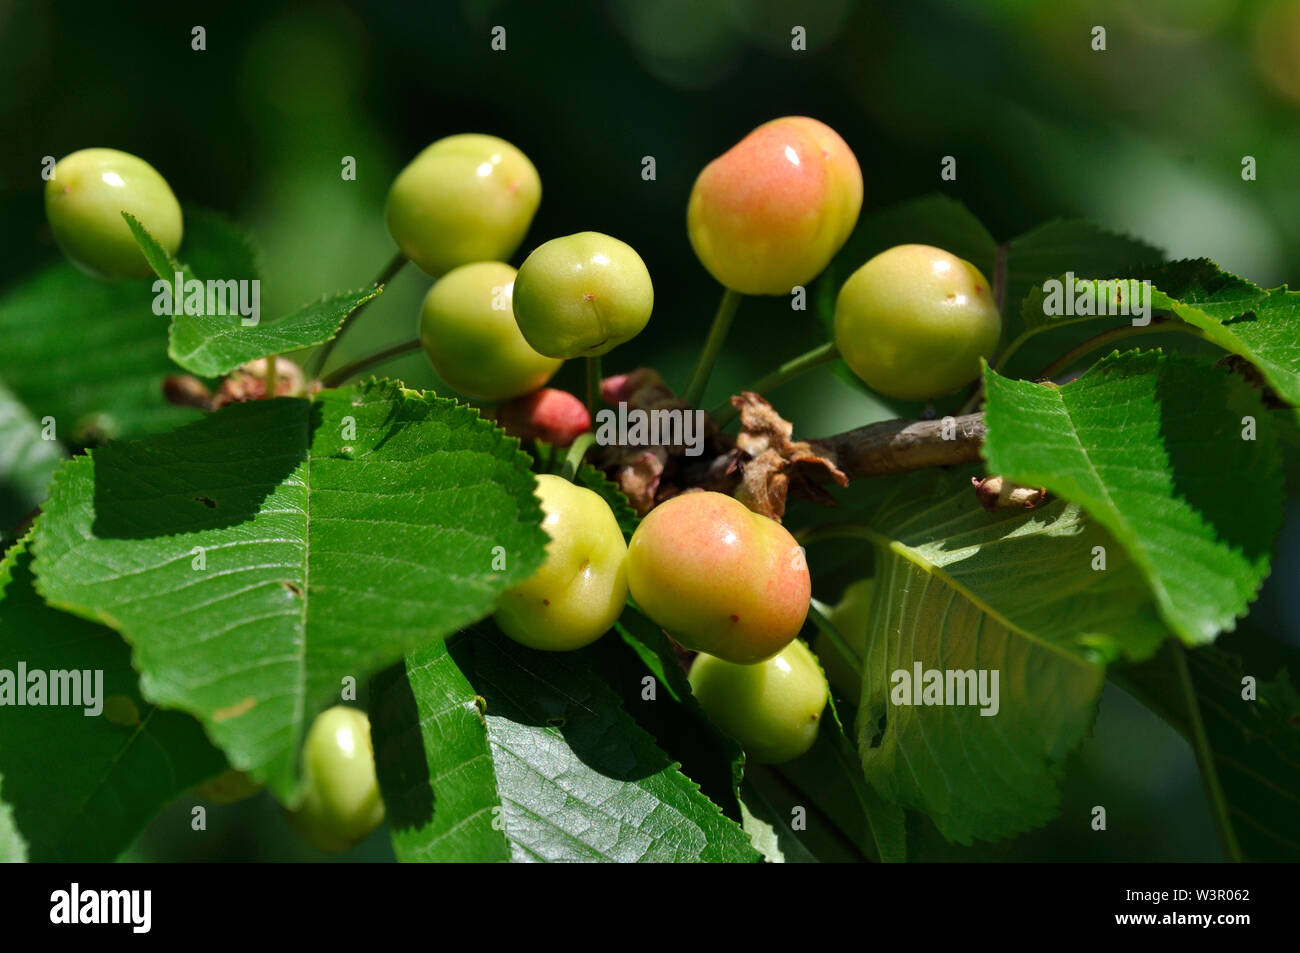 Wild Cherry, Sweet cherry (Prunus avium). Fruit on a branch: green and yellowish cherries. Germany Stock Photo